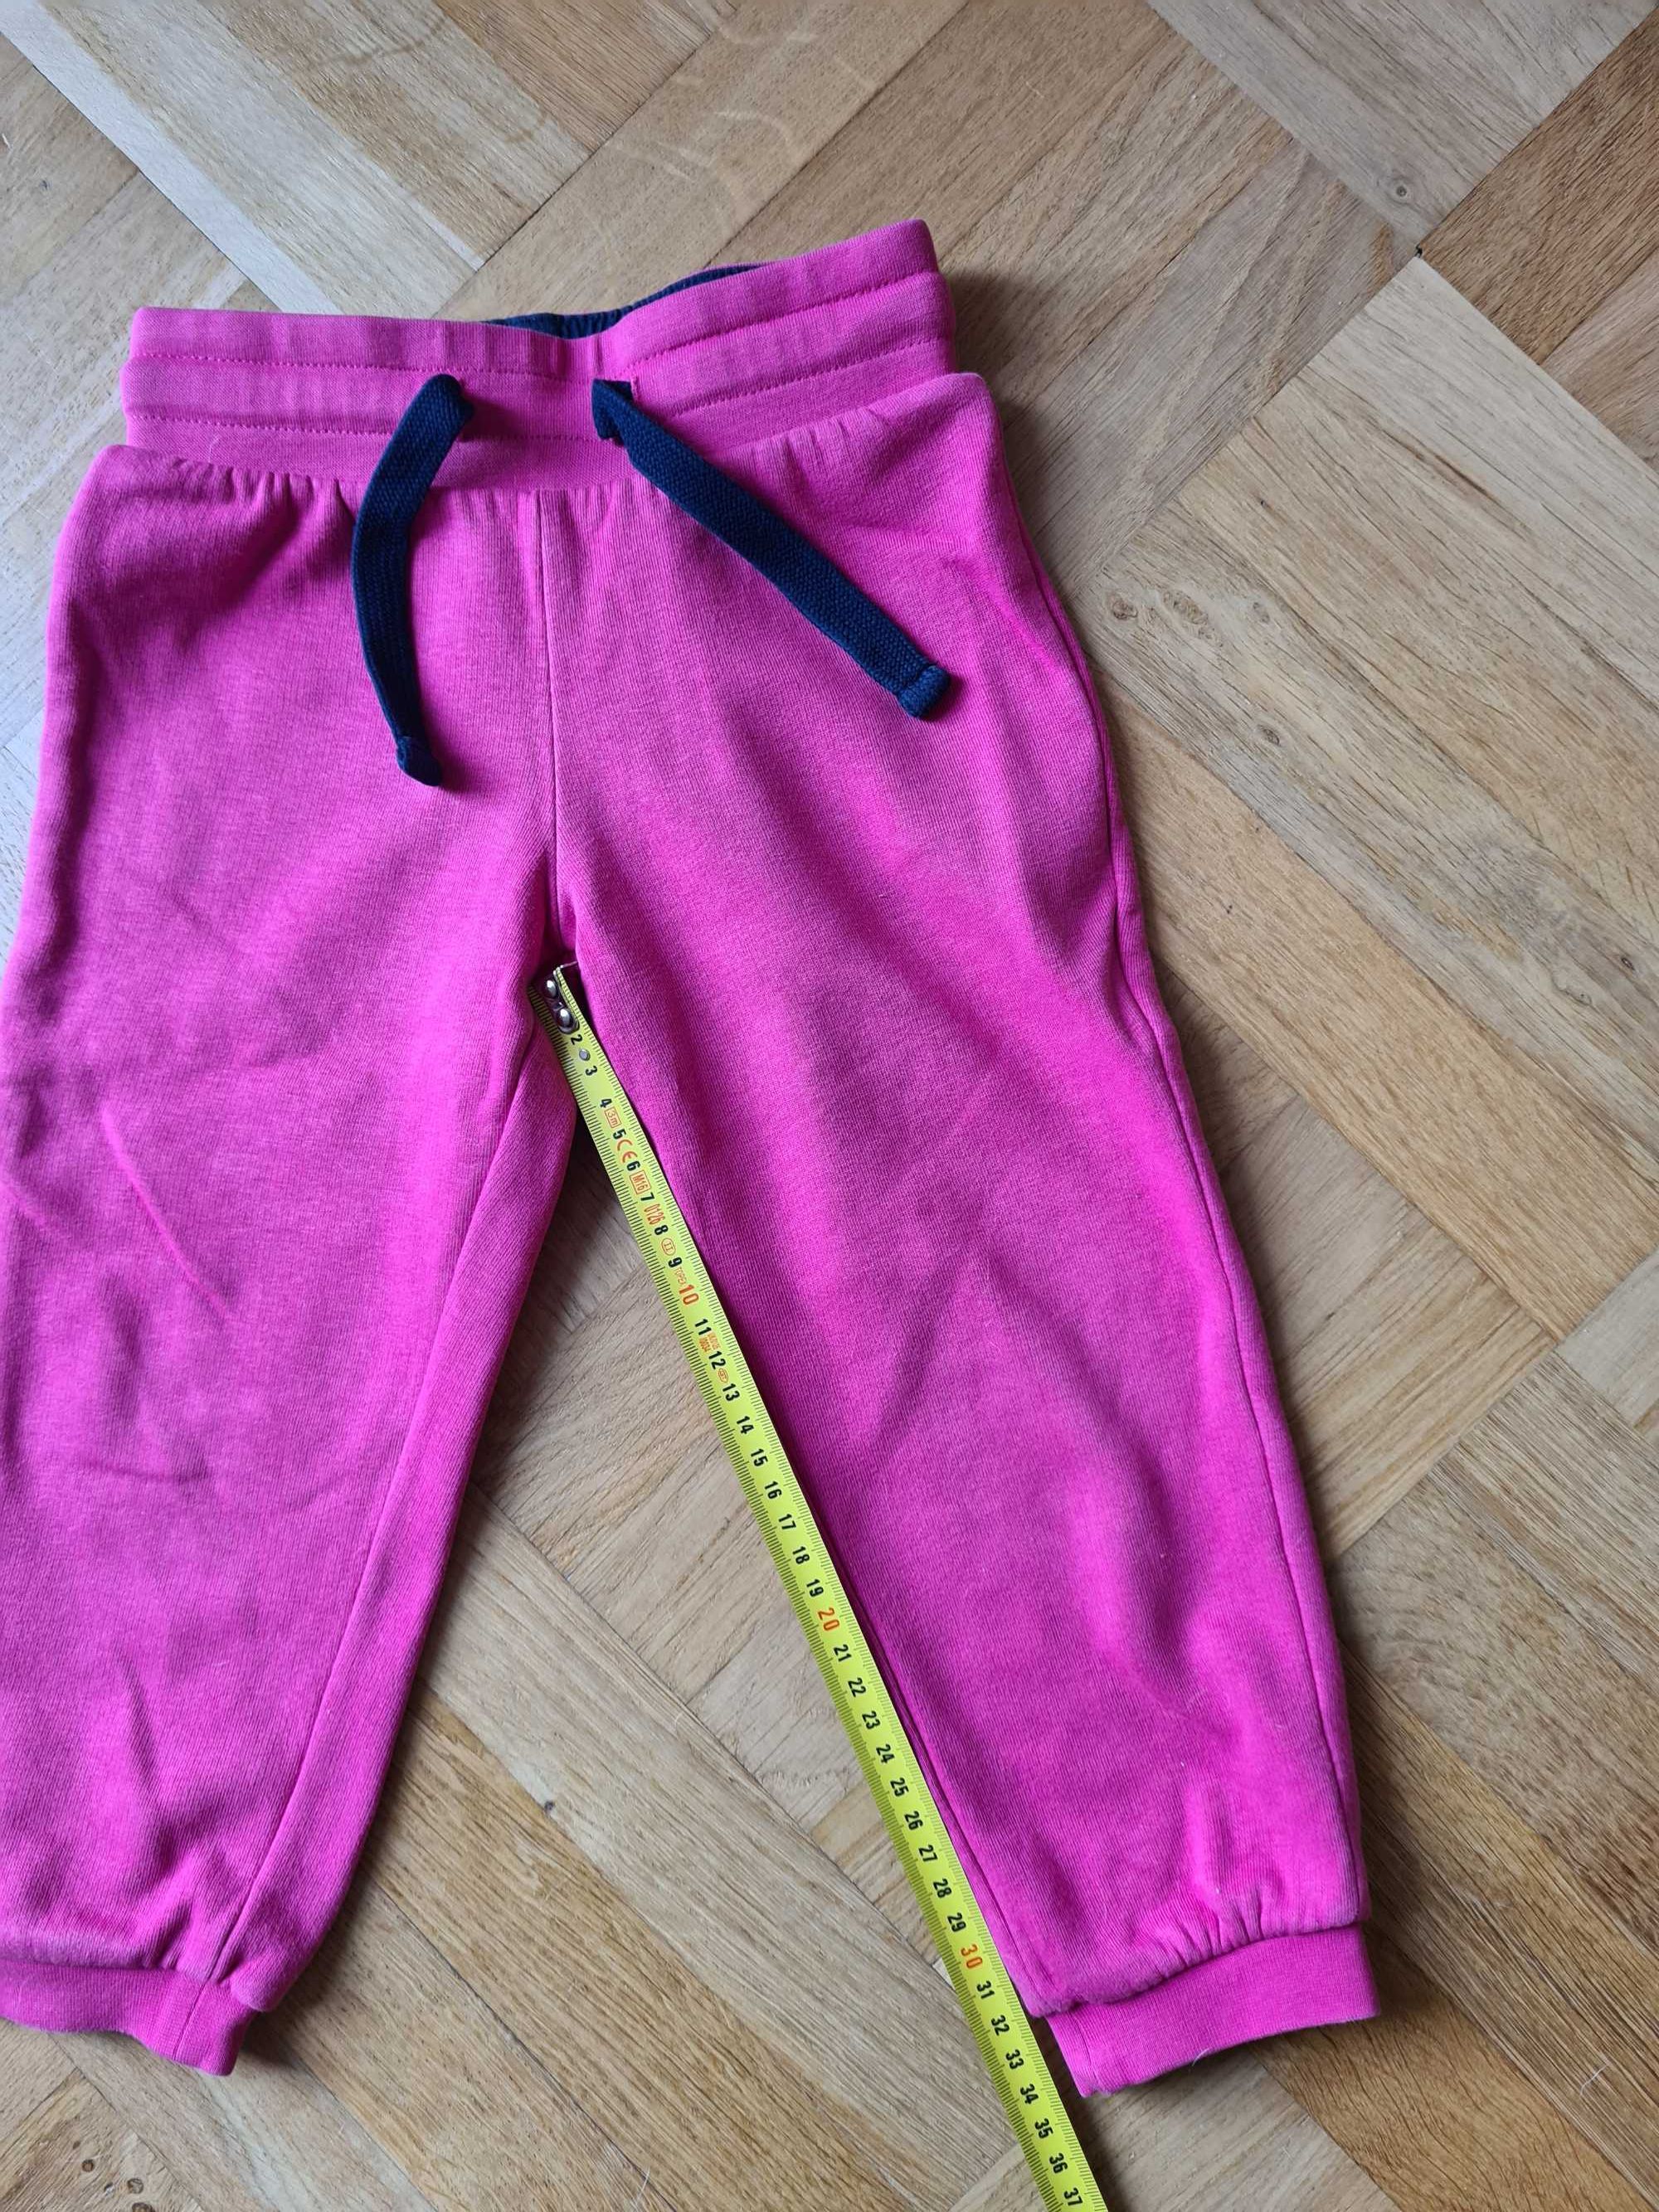 Spodnie i sukienka dziewczęca, kolor różowy- rozmiar 92